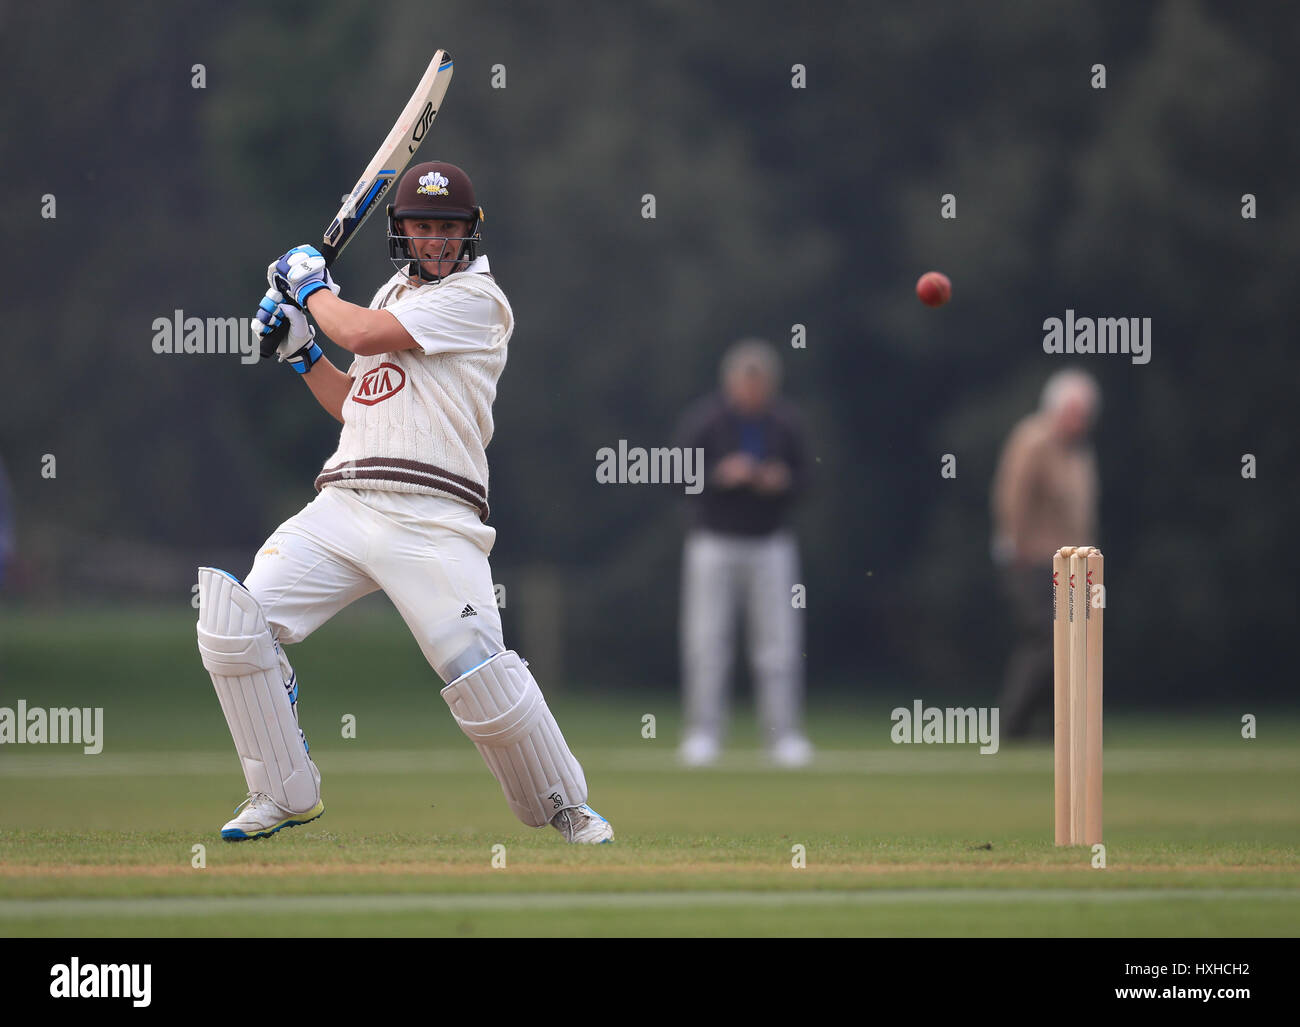 Surrey's Scott Borthwick au cours de la première journée du match de cricket de premier ordre dans les parcs, Oxford. Banque D'Images